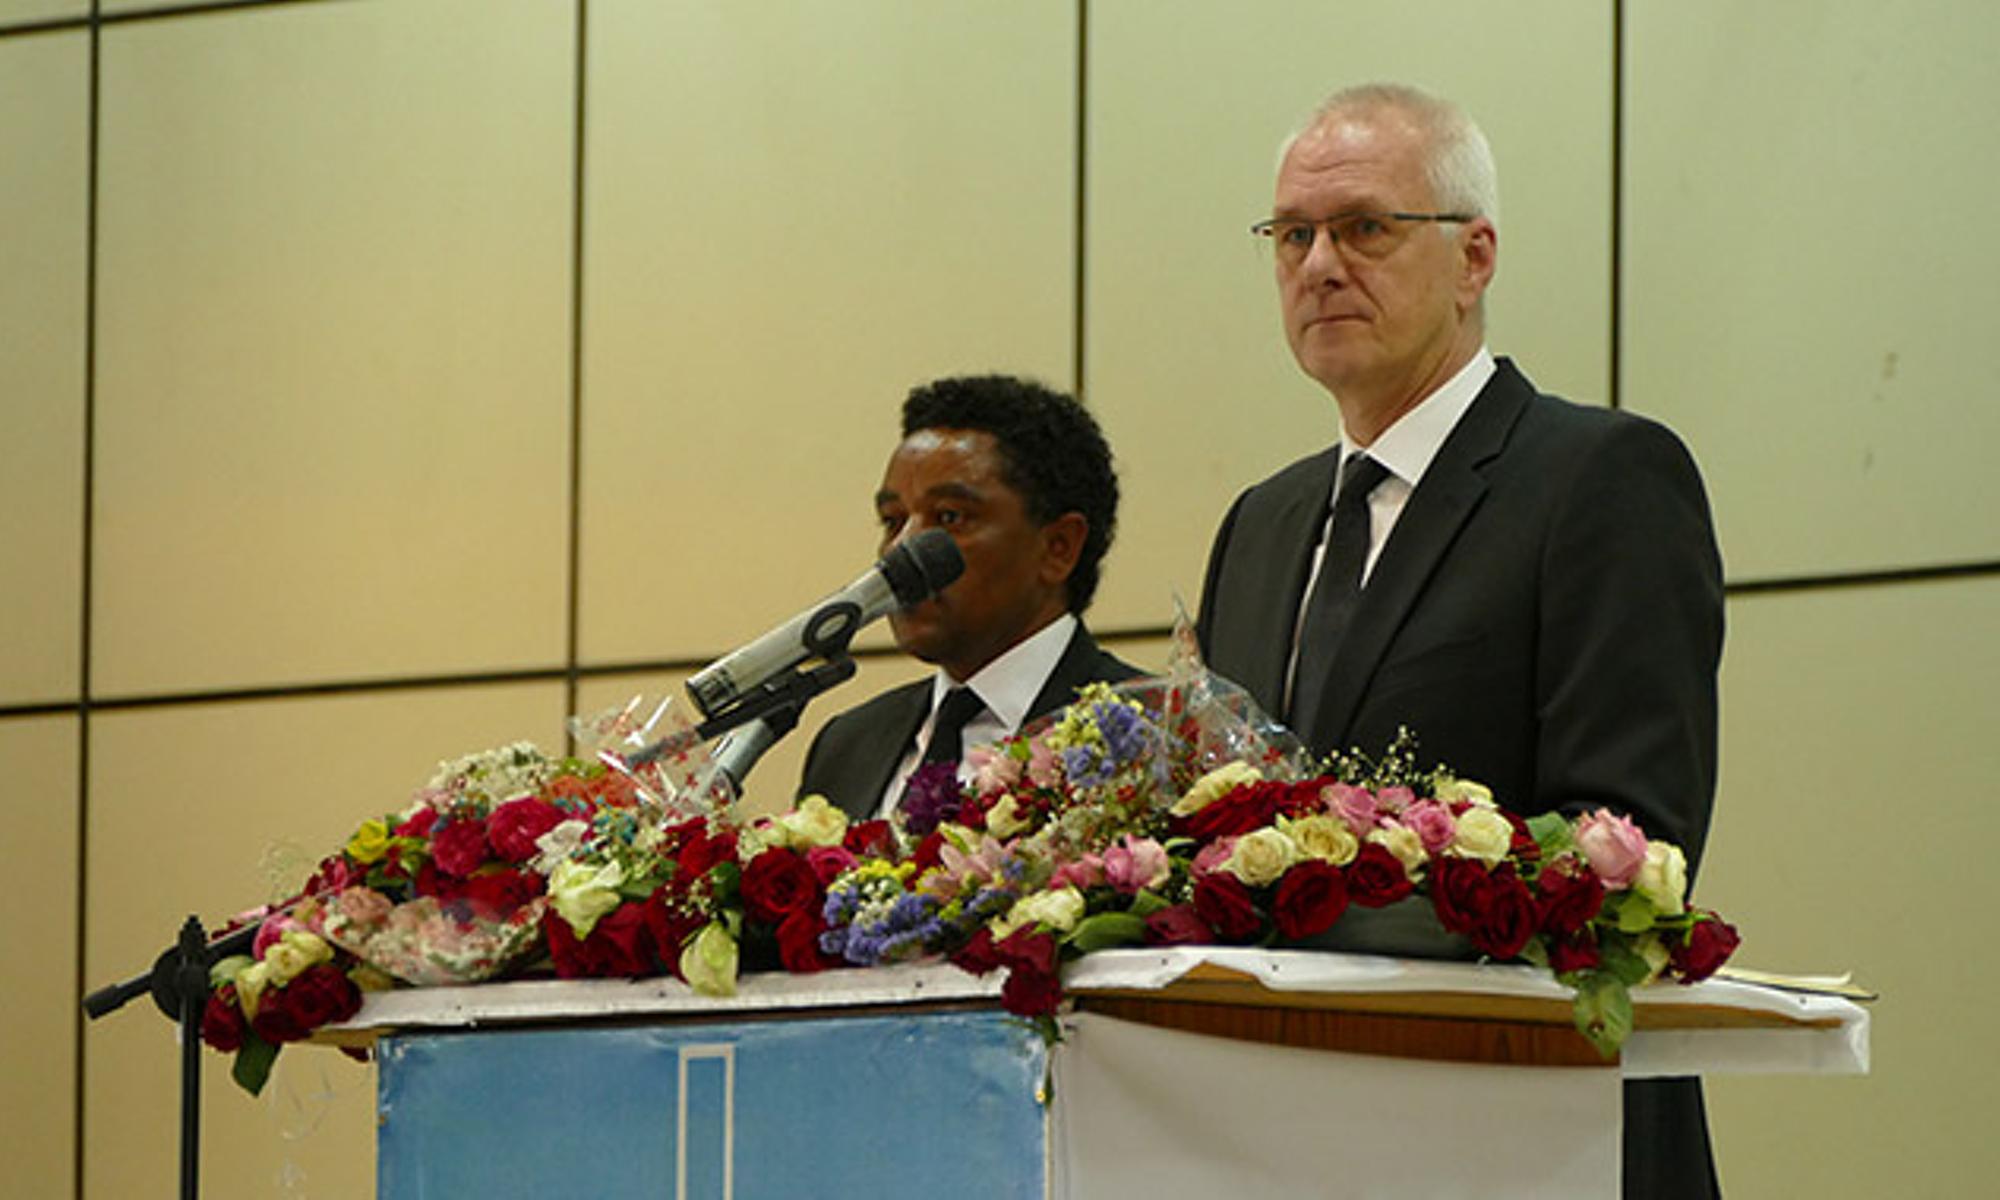 Bezirksapostel Ehrich und sein Übersetzer am Altar in Addis Abeba